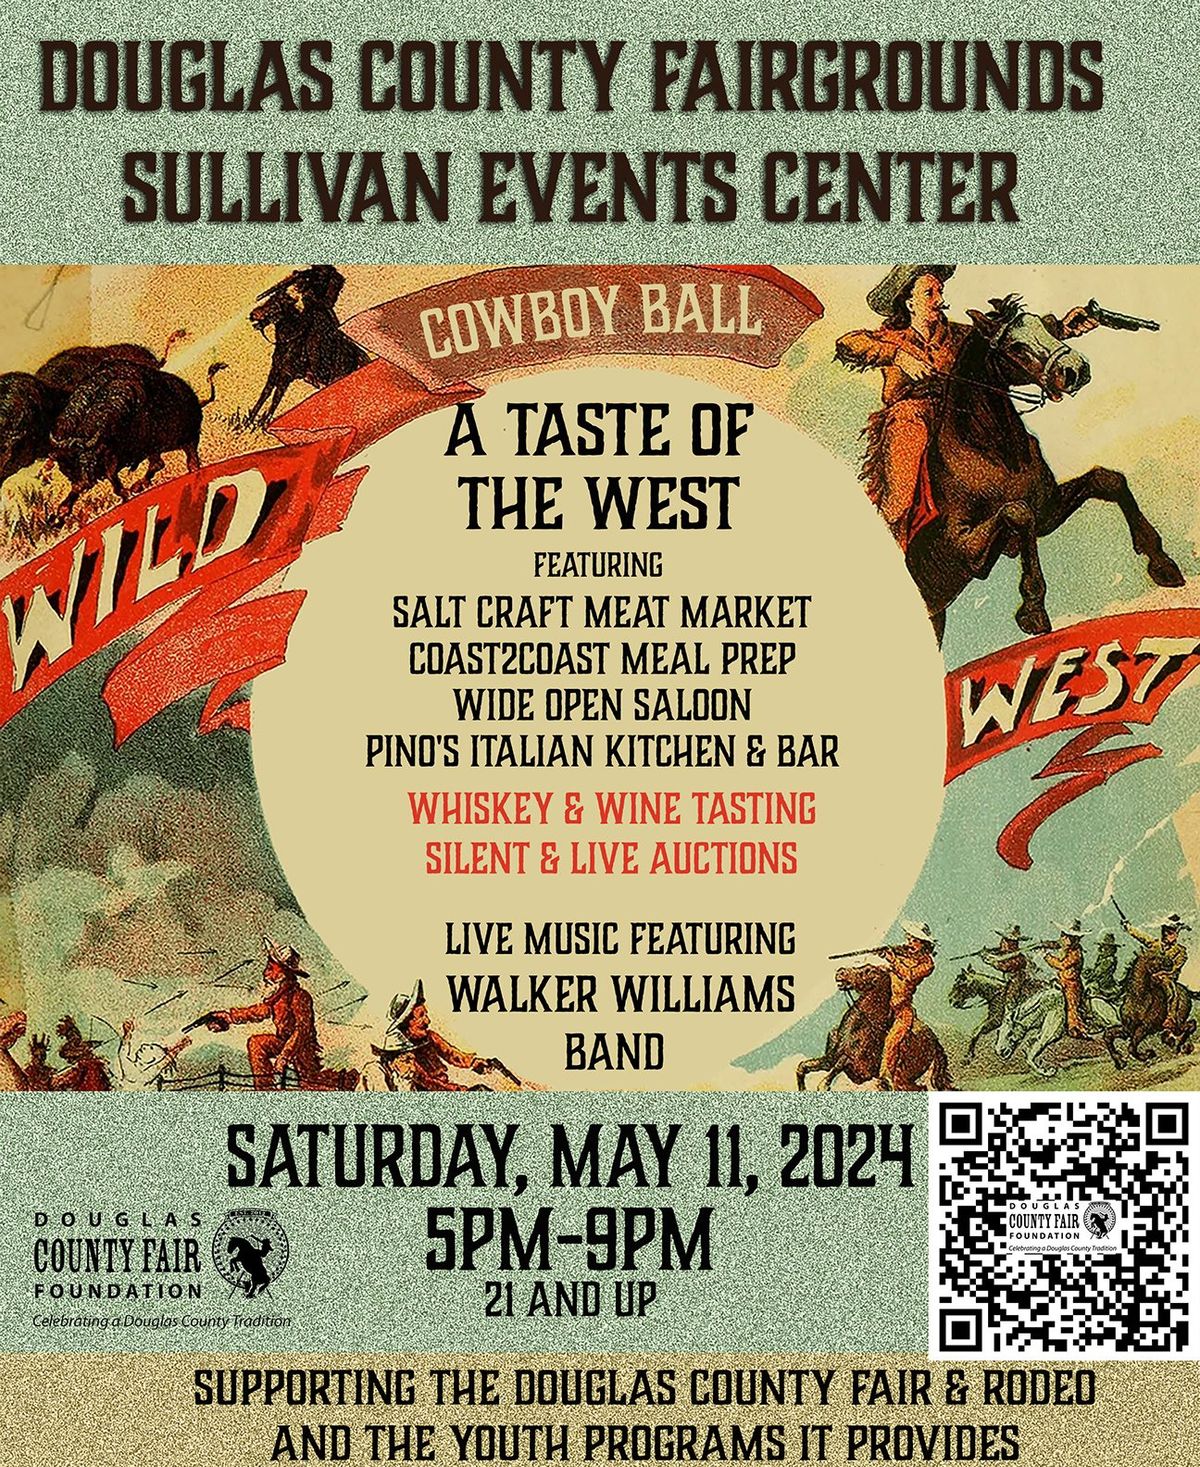 Wild West Cowboy Ball